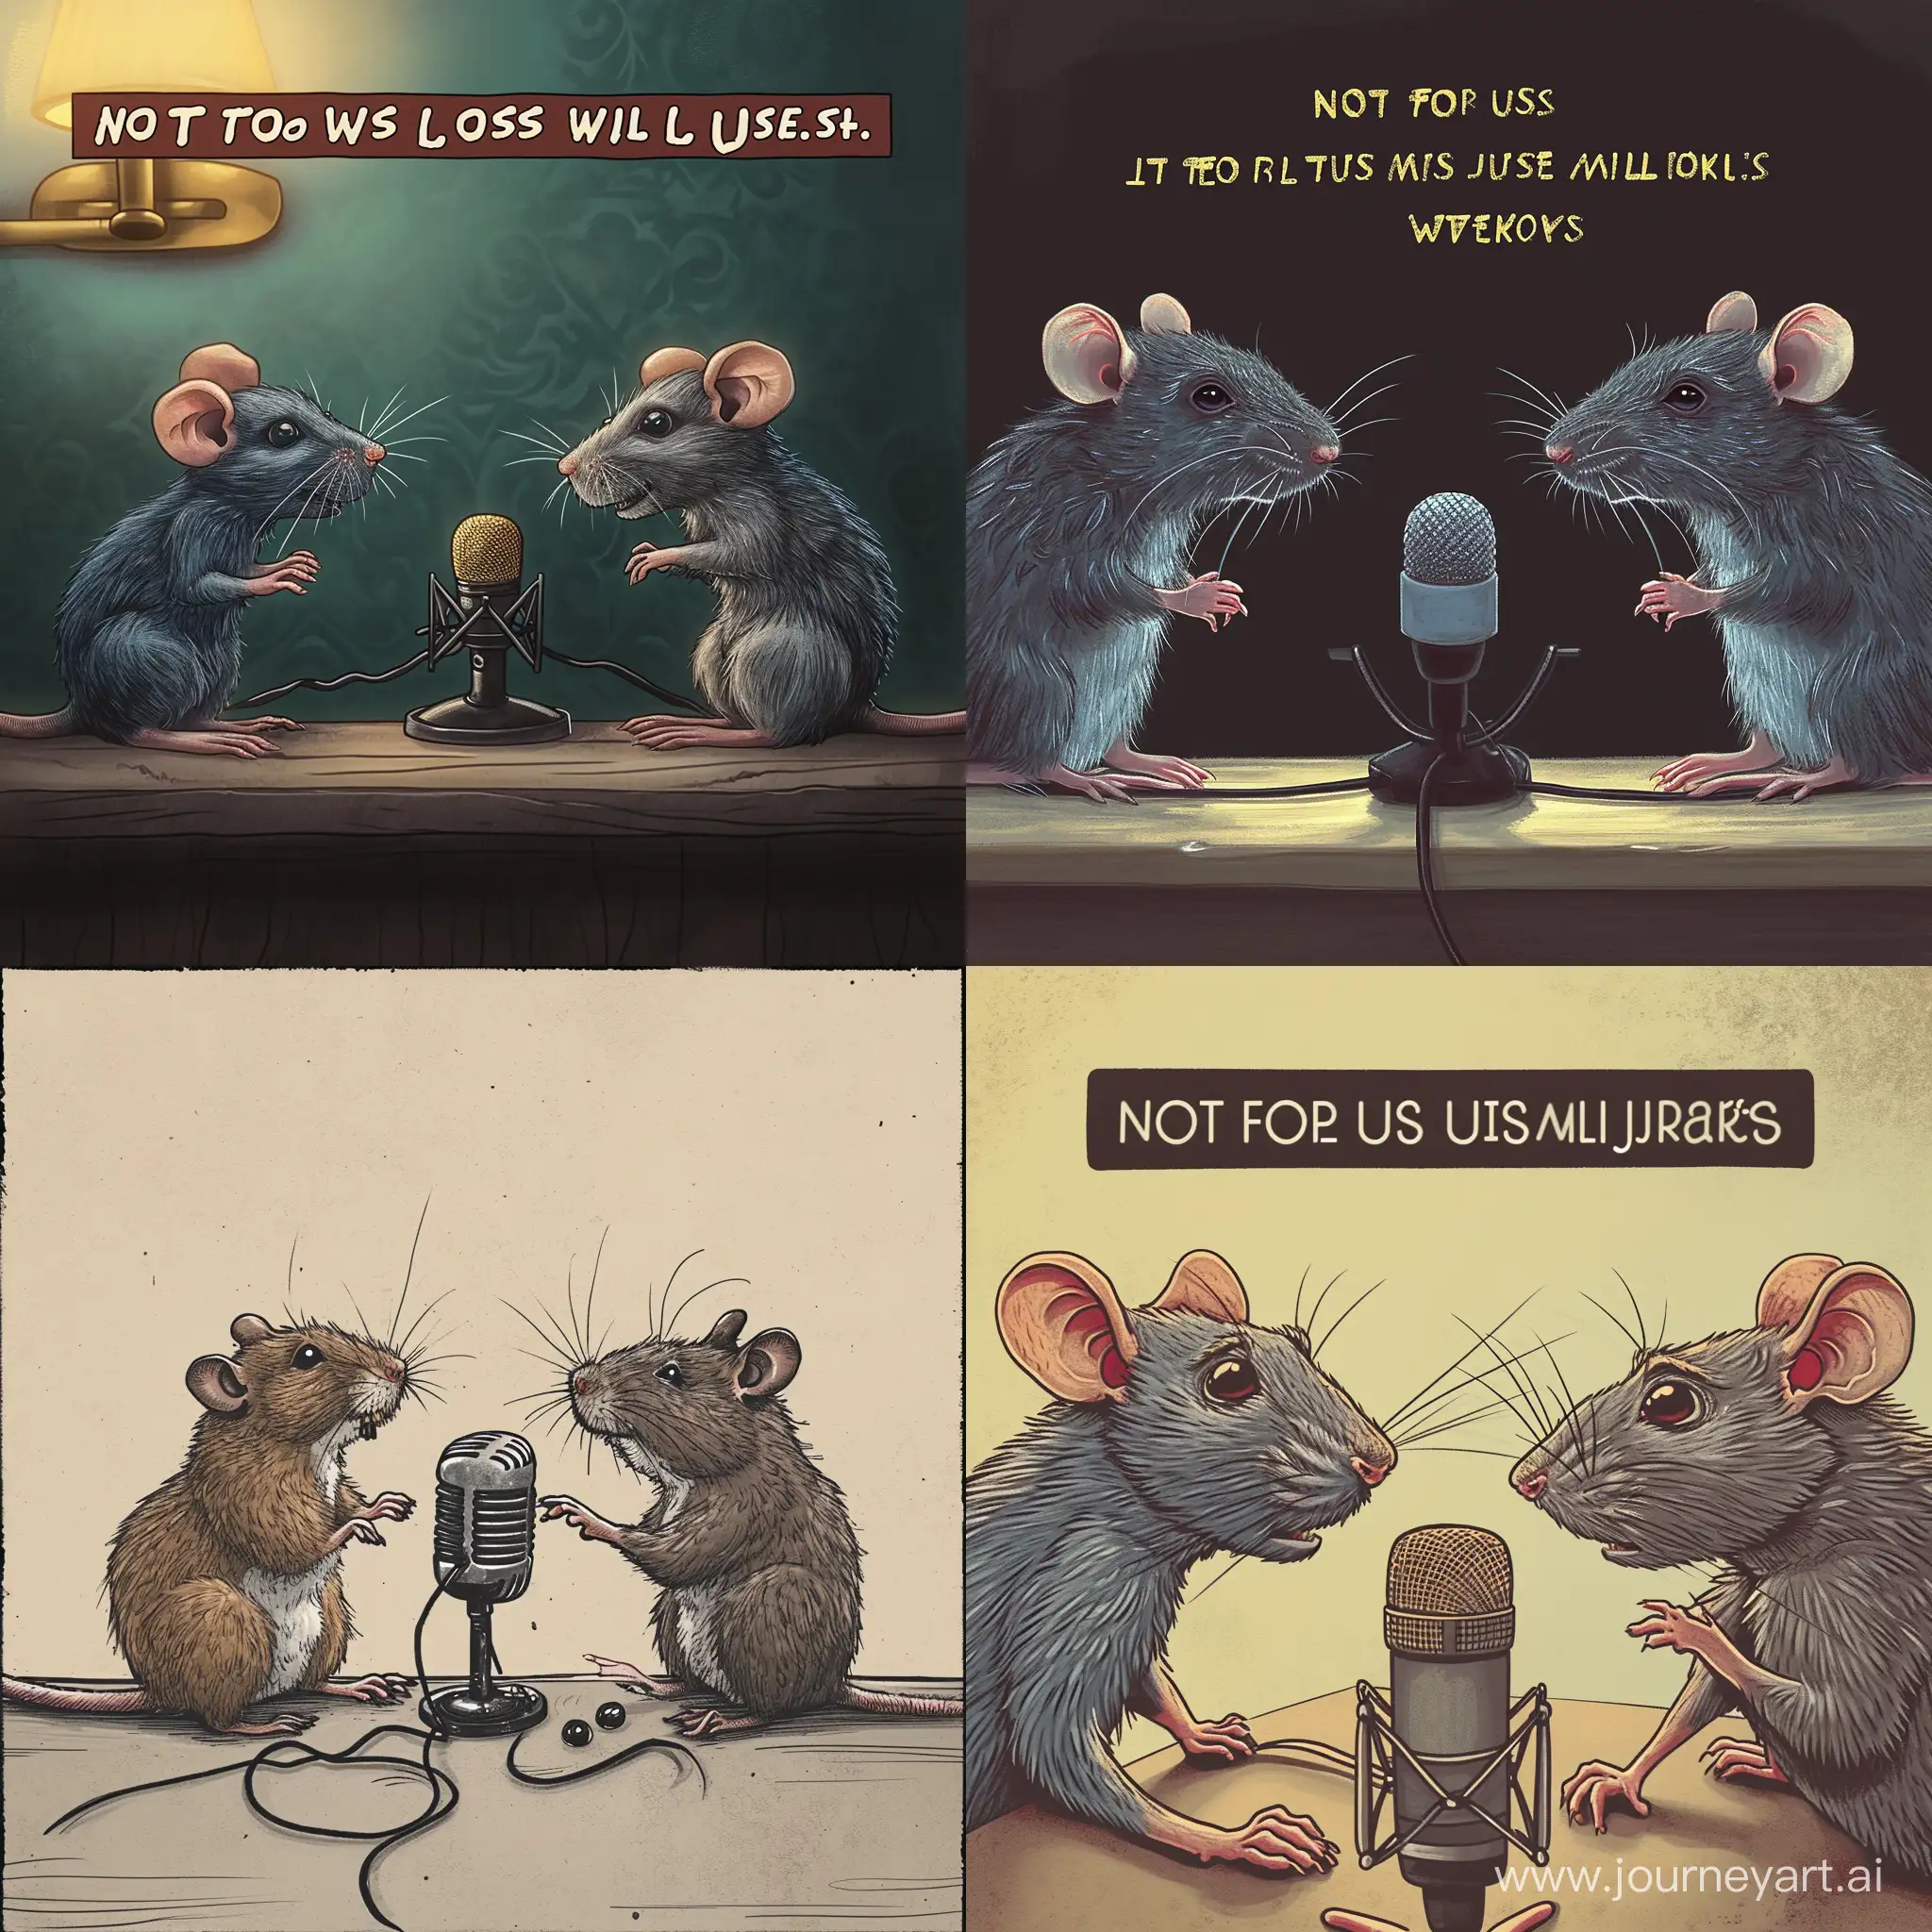 Нарисуй обложку для аудиоподкаста под названием "Не нам судить, но мы обсудим" с двумя крысами, которые разговаривают у микрофона